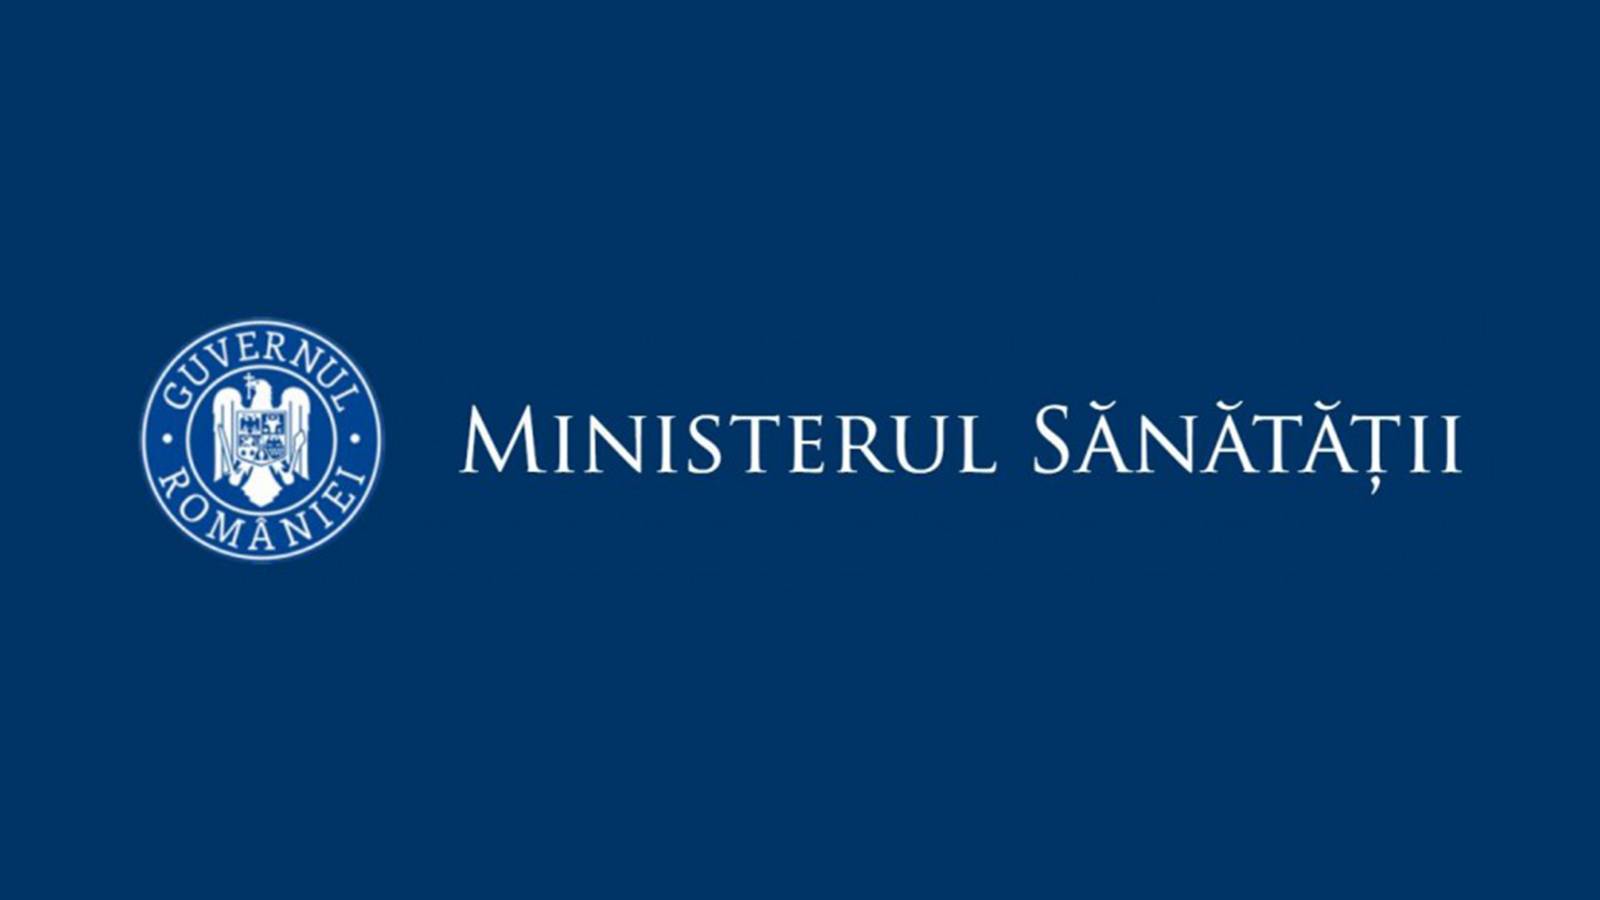 Ministerul Sanatatii romani vaccinat 25 Ianuarie